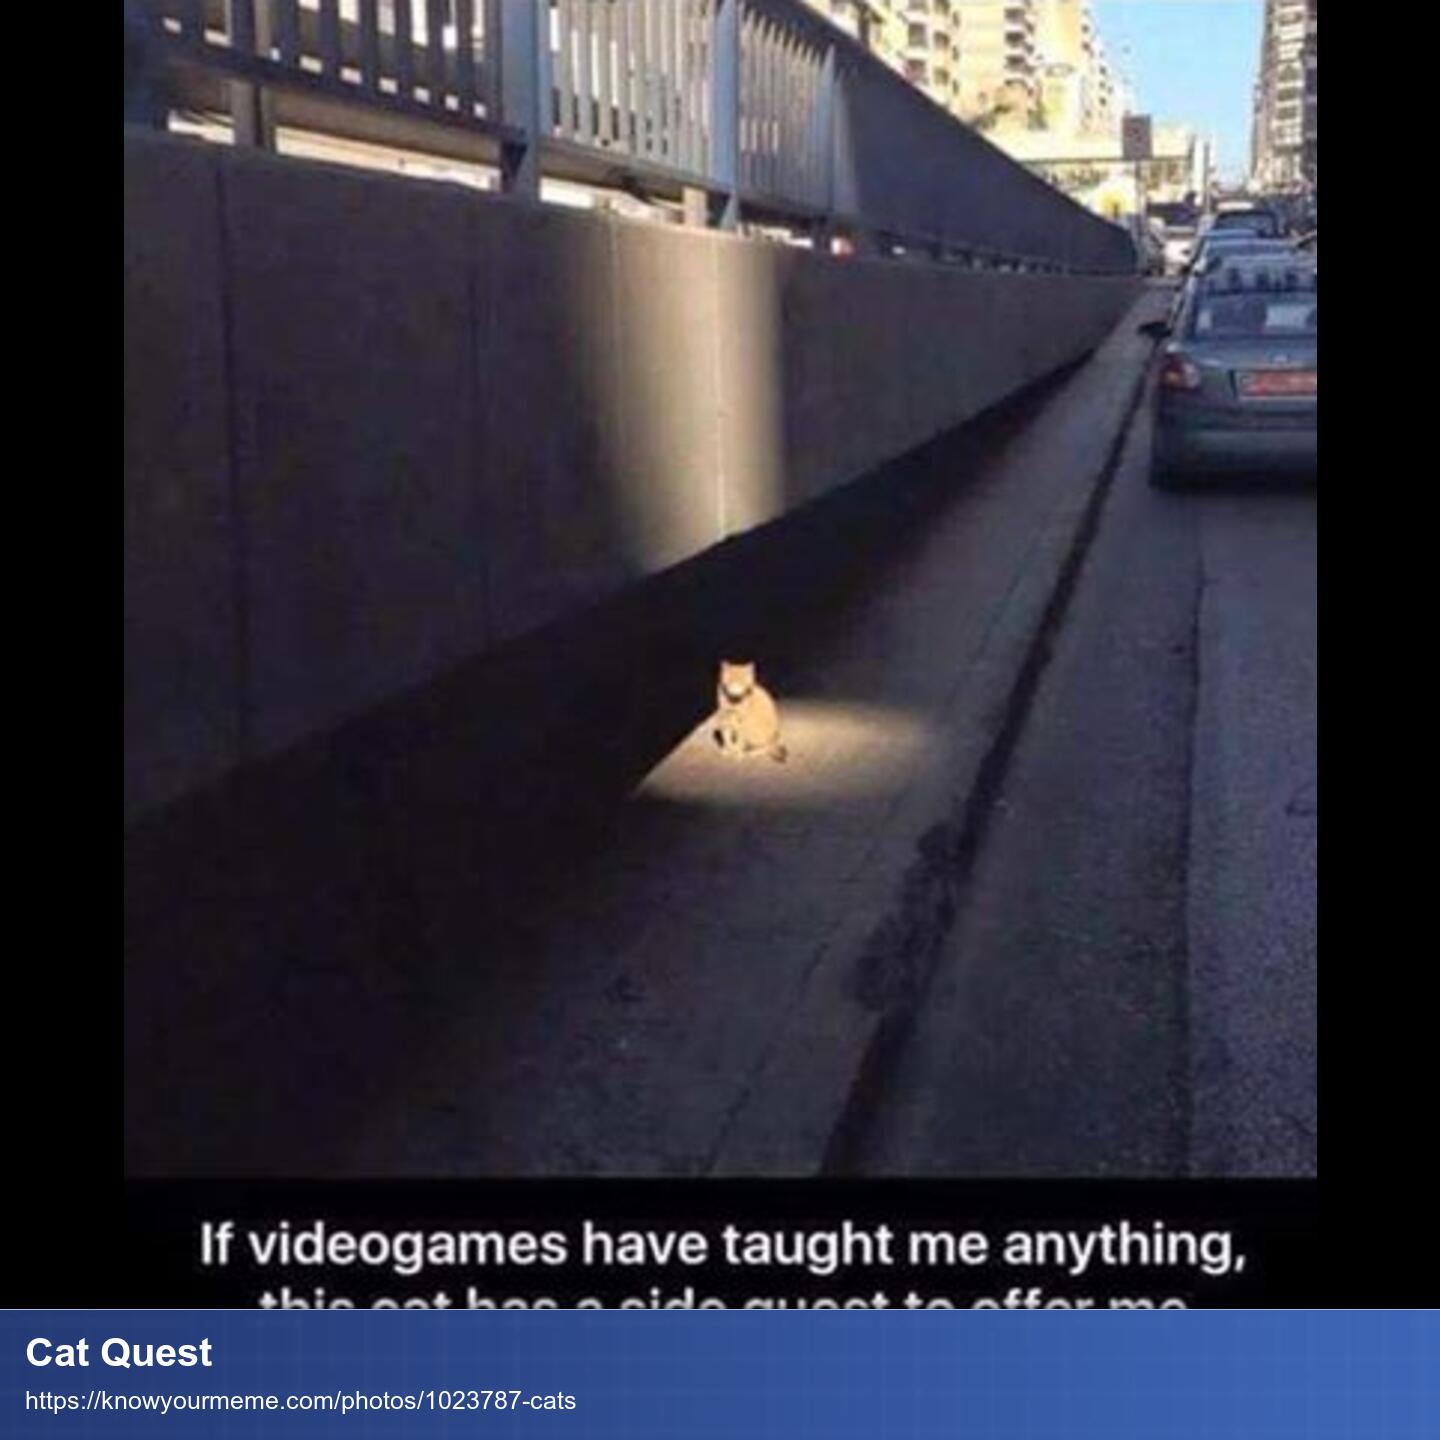 Eine Katze sitzt auf einer Straße. Alles ist dunkel und grau aber auf die Katze fällt ein Licht wie von einem Theaterscheinwerfer.